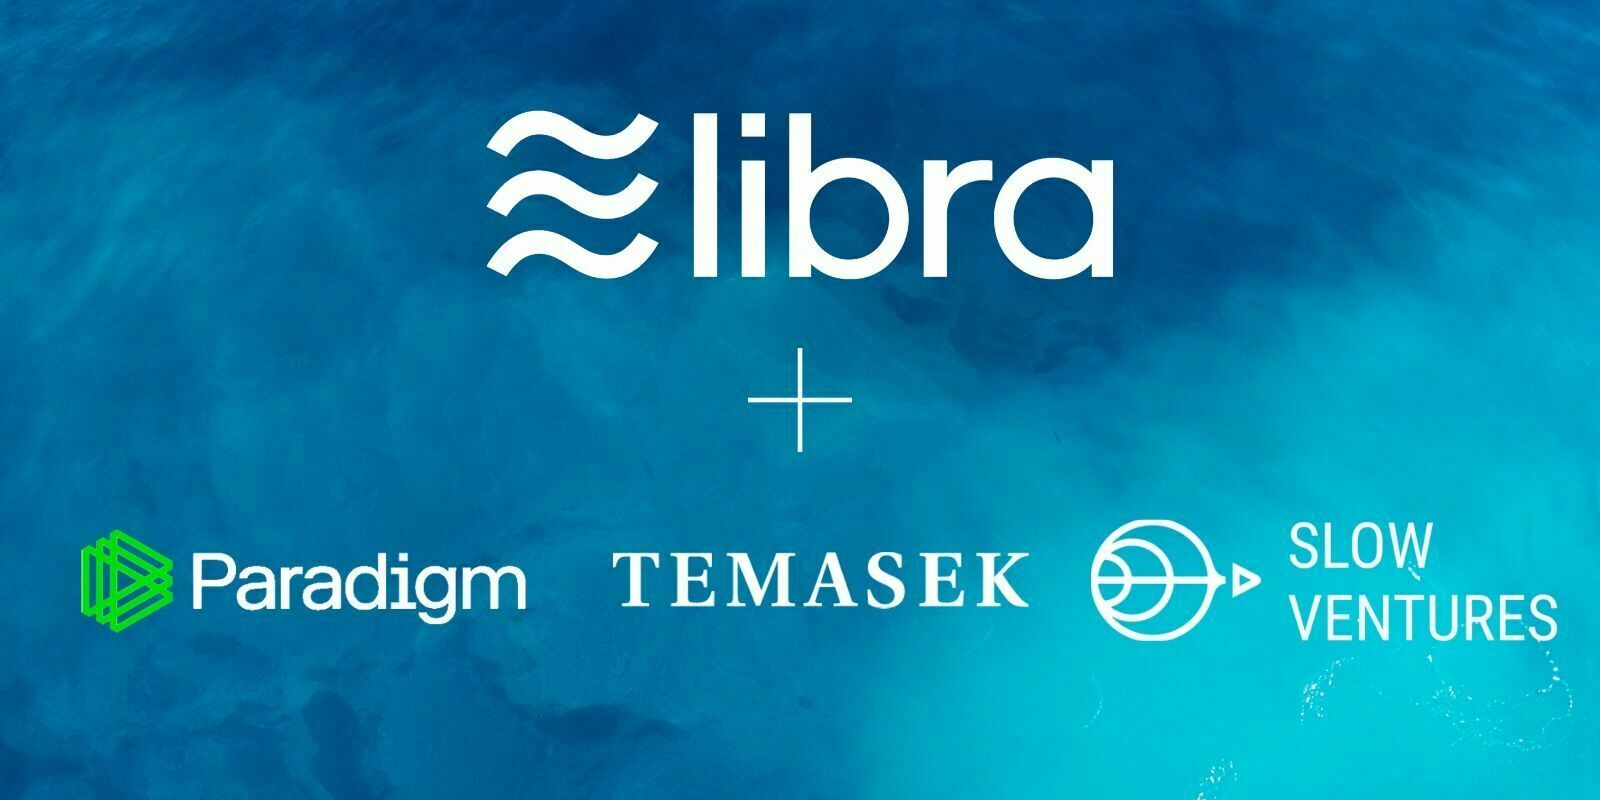 L'Association Libra accueille 3 nouveaux membres, Temasek, Slow Ventures et Paradigm